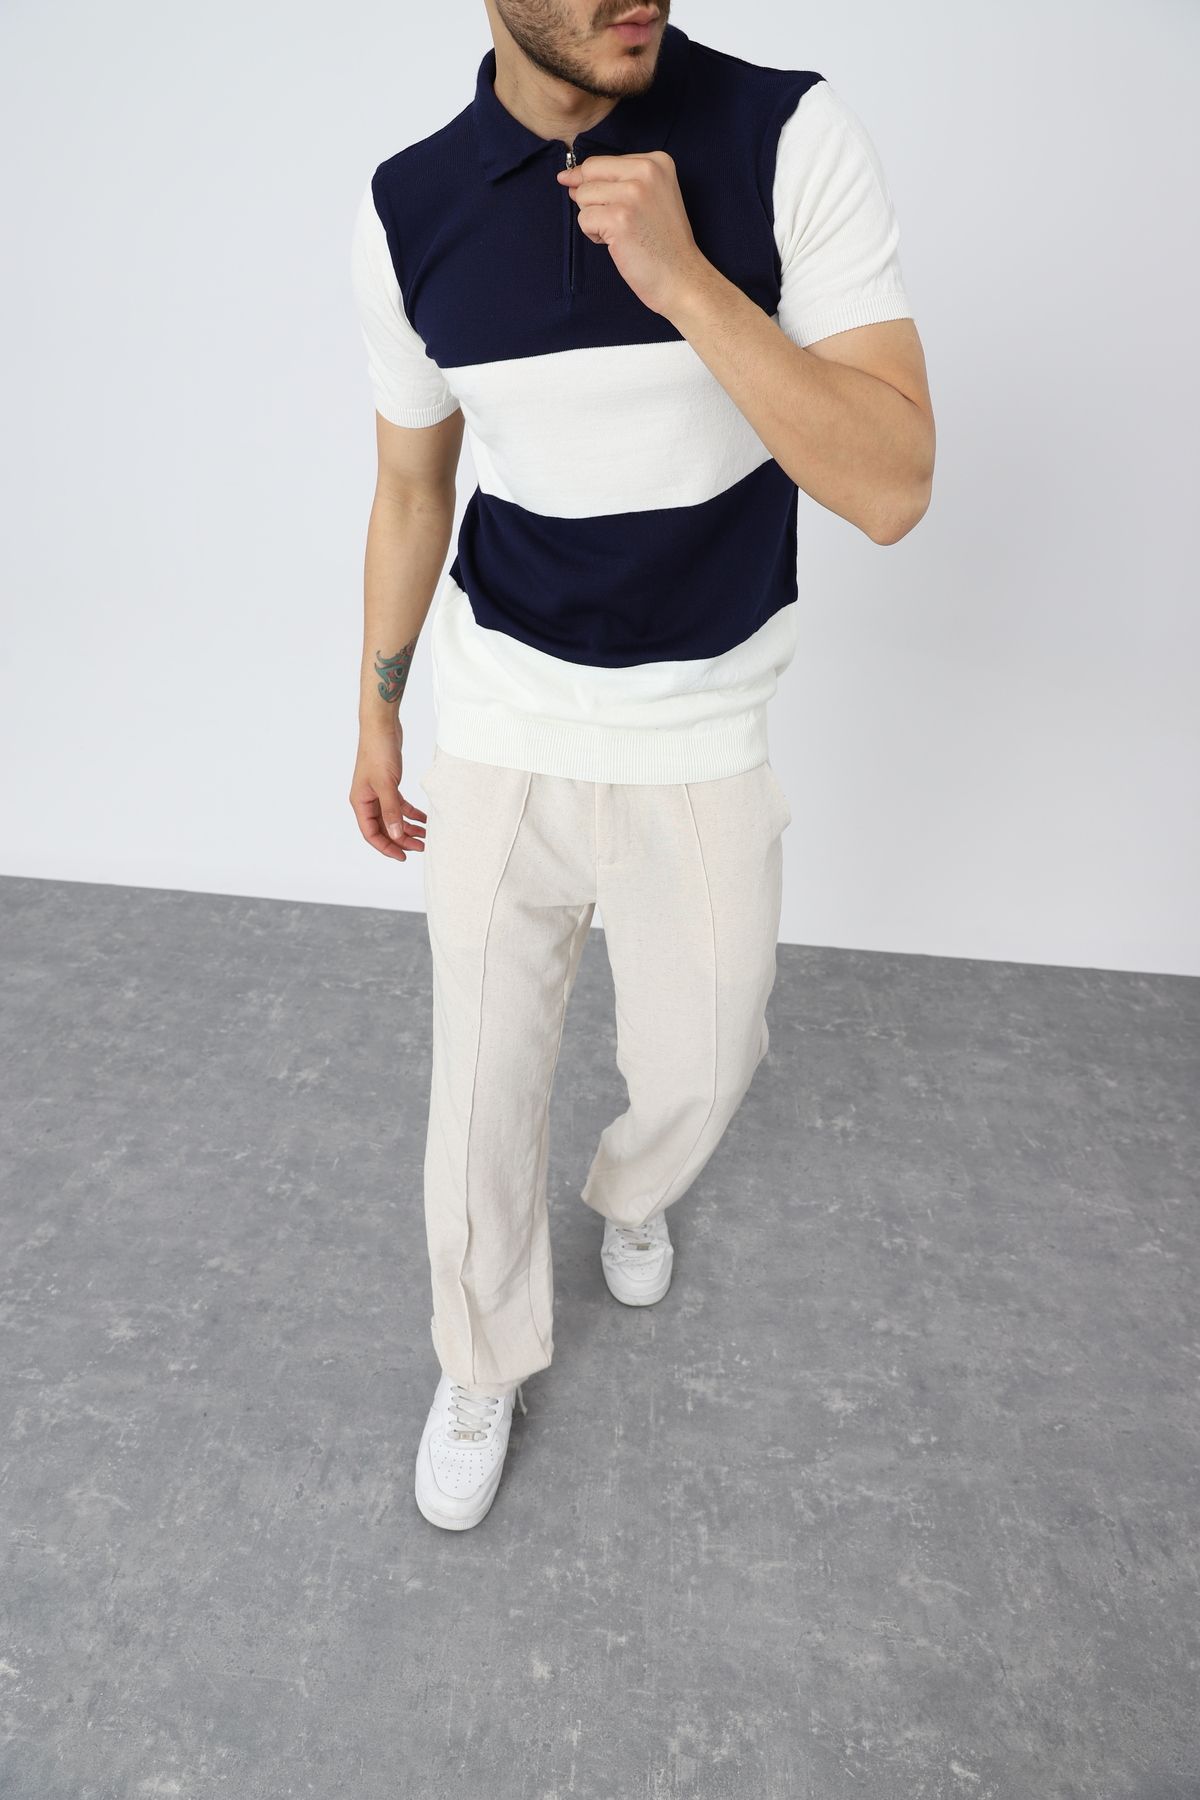 HABBE UNİSEX Fermuarlı Lacivert Erkek Polo Yaka Triko Bluz,erkek Giyim,üst Giyim,trend Giyim,tişört